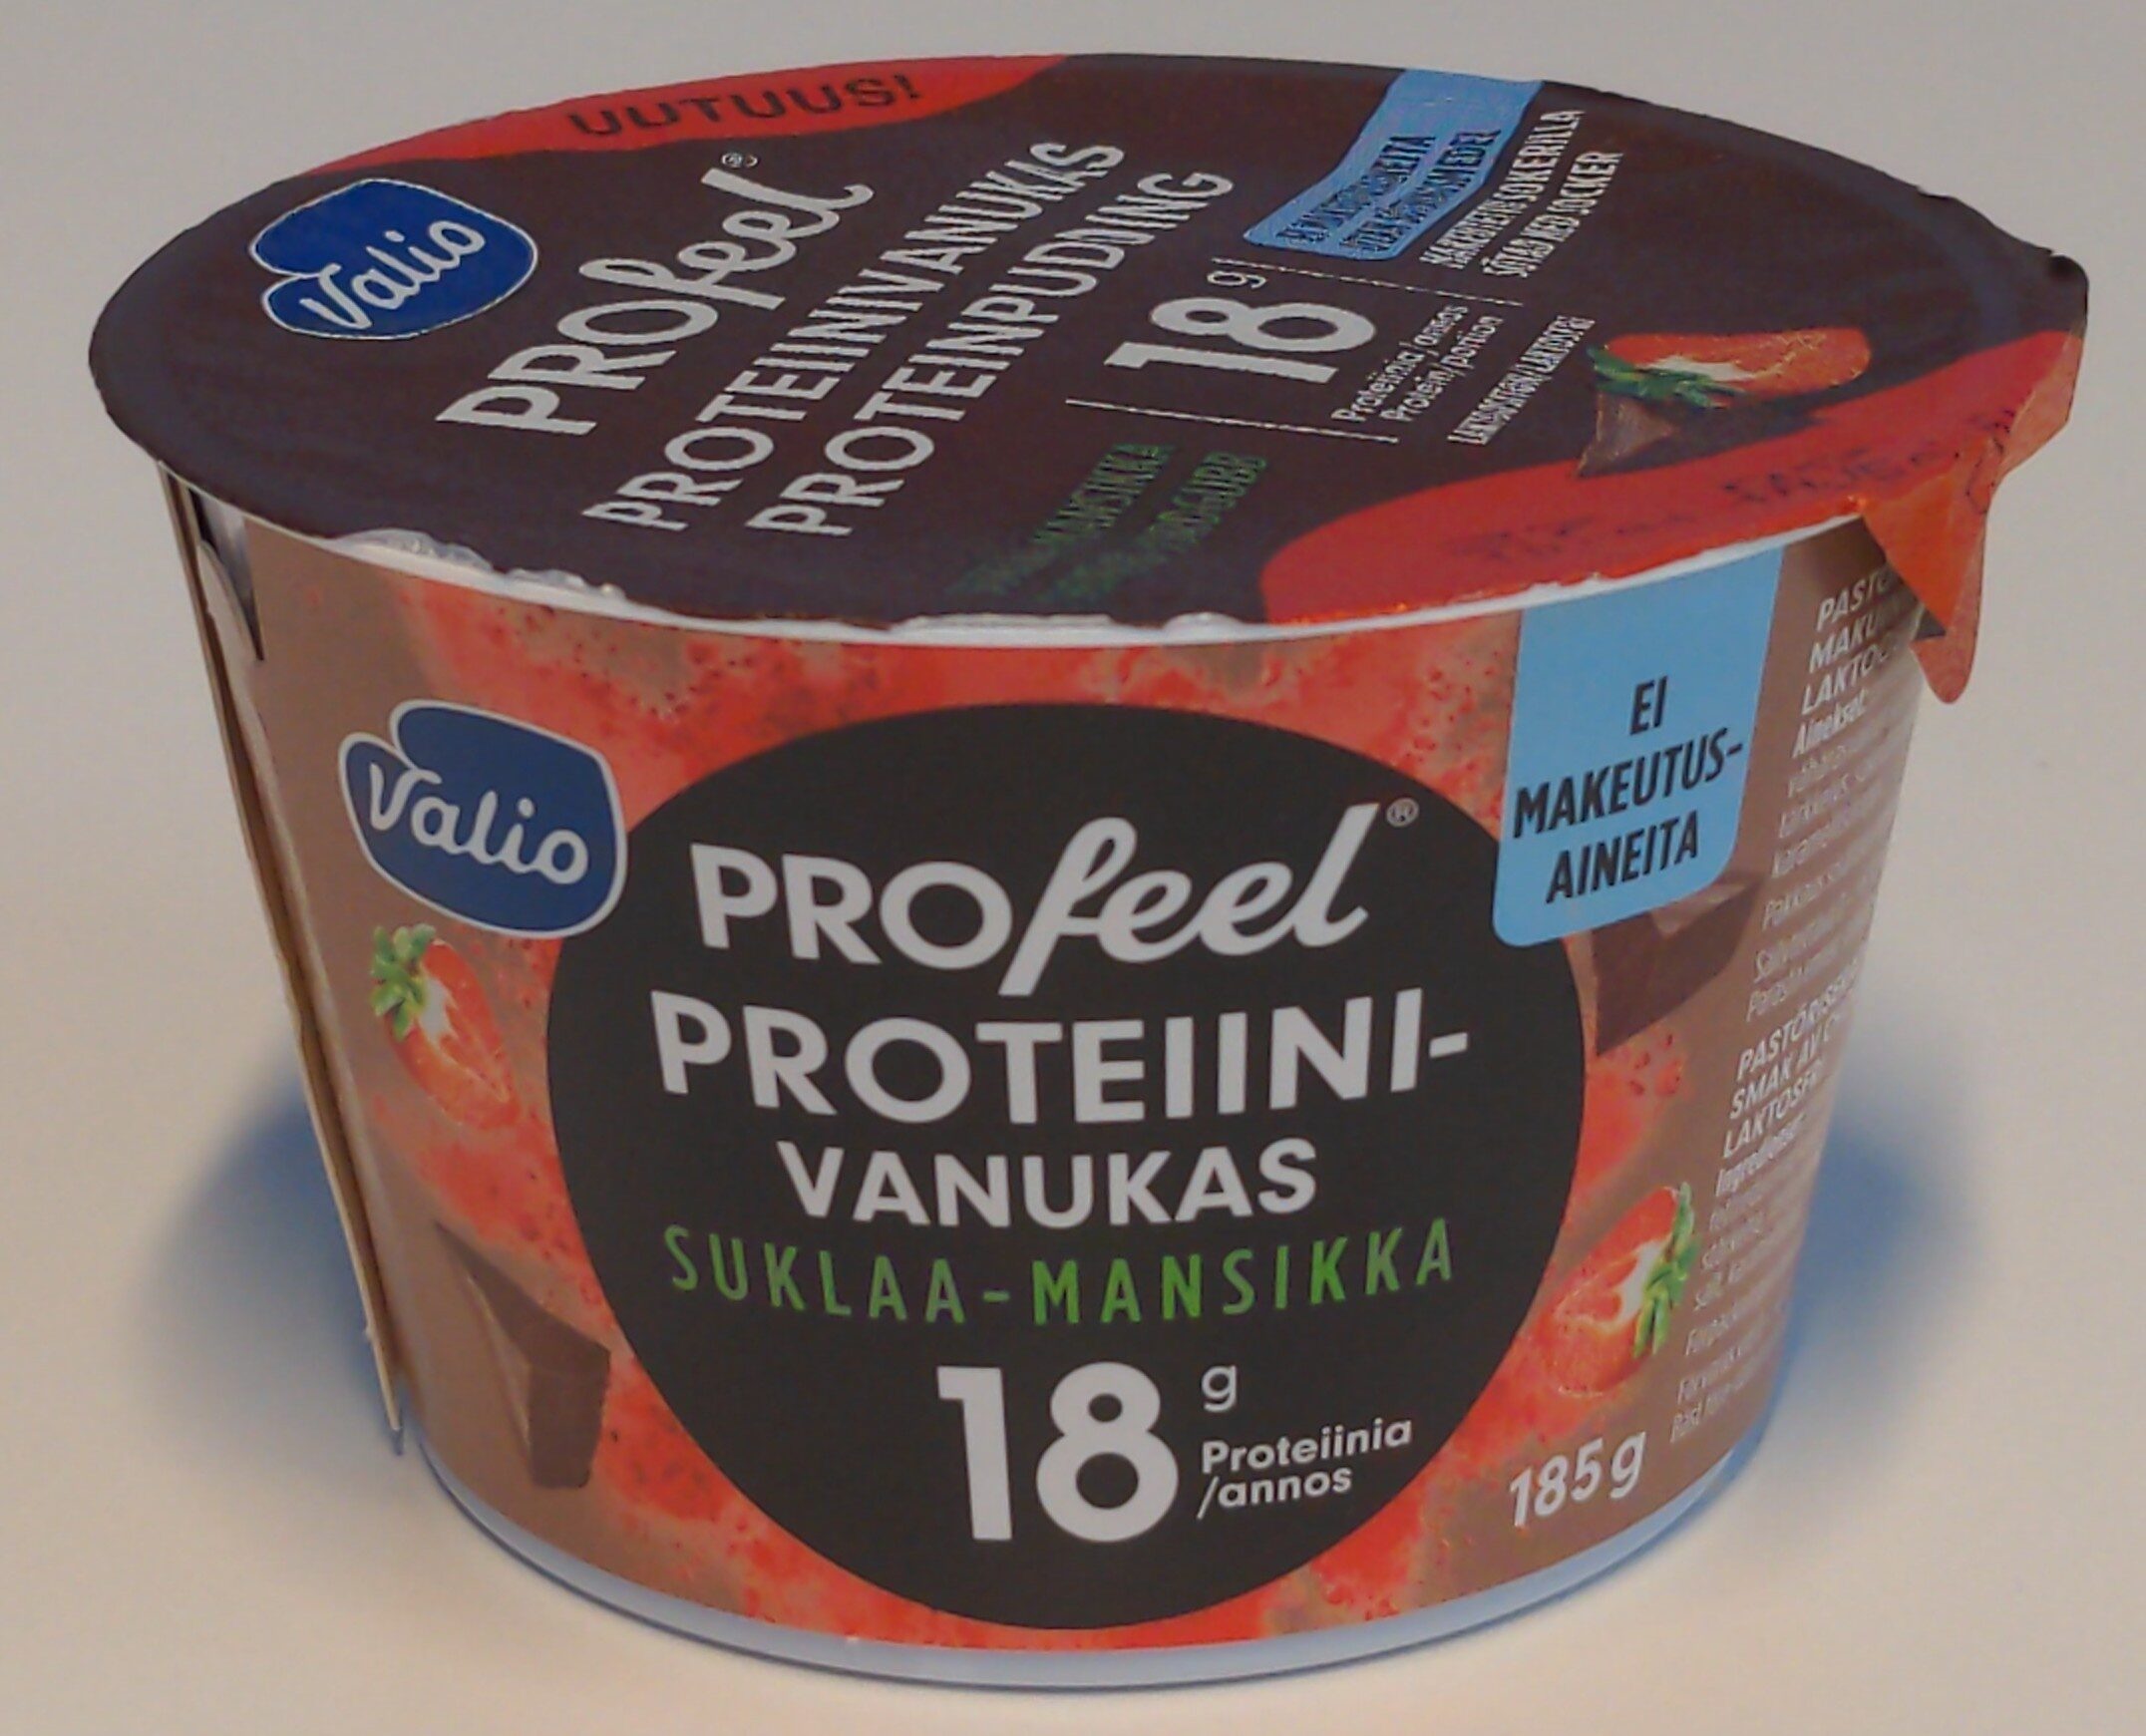 PROfeel proteiinivanukas suklaa-mansikka - Tuote